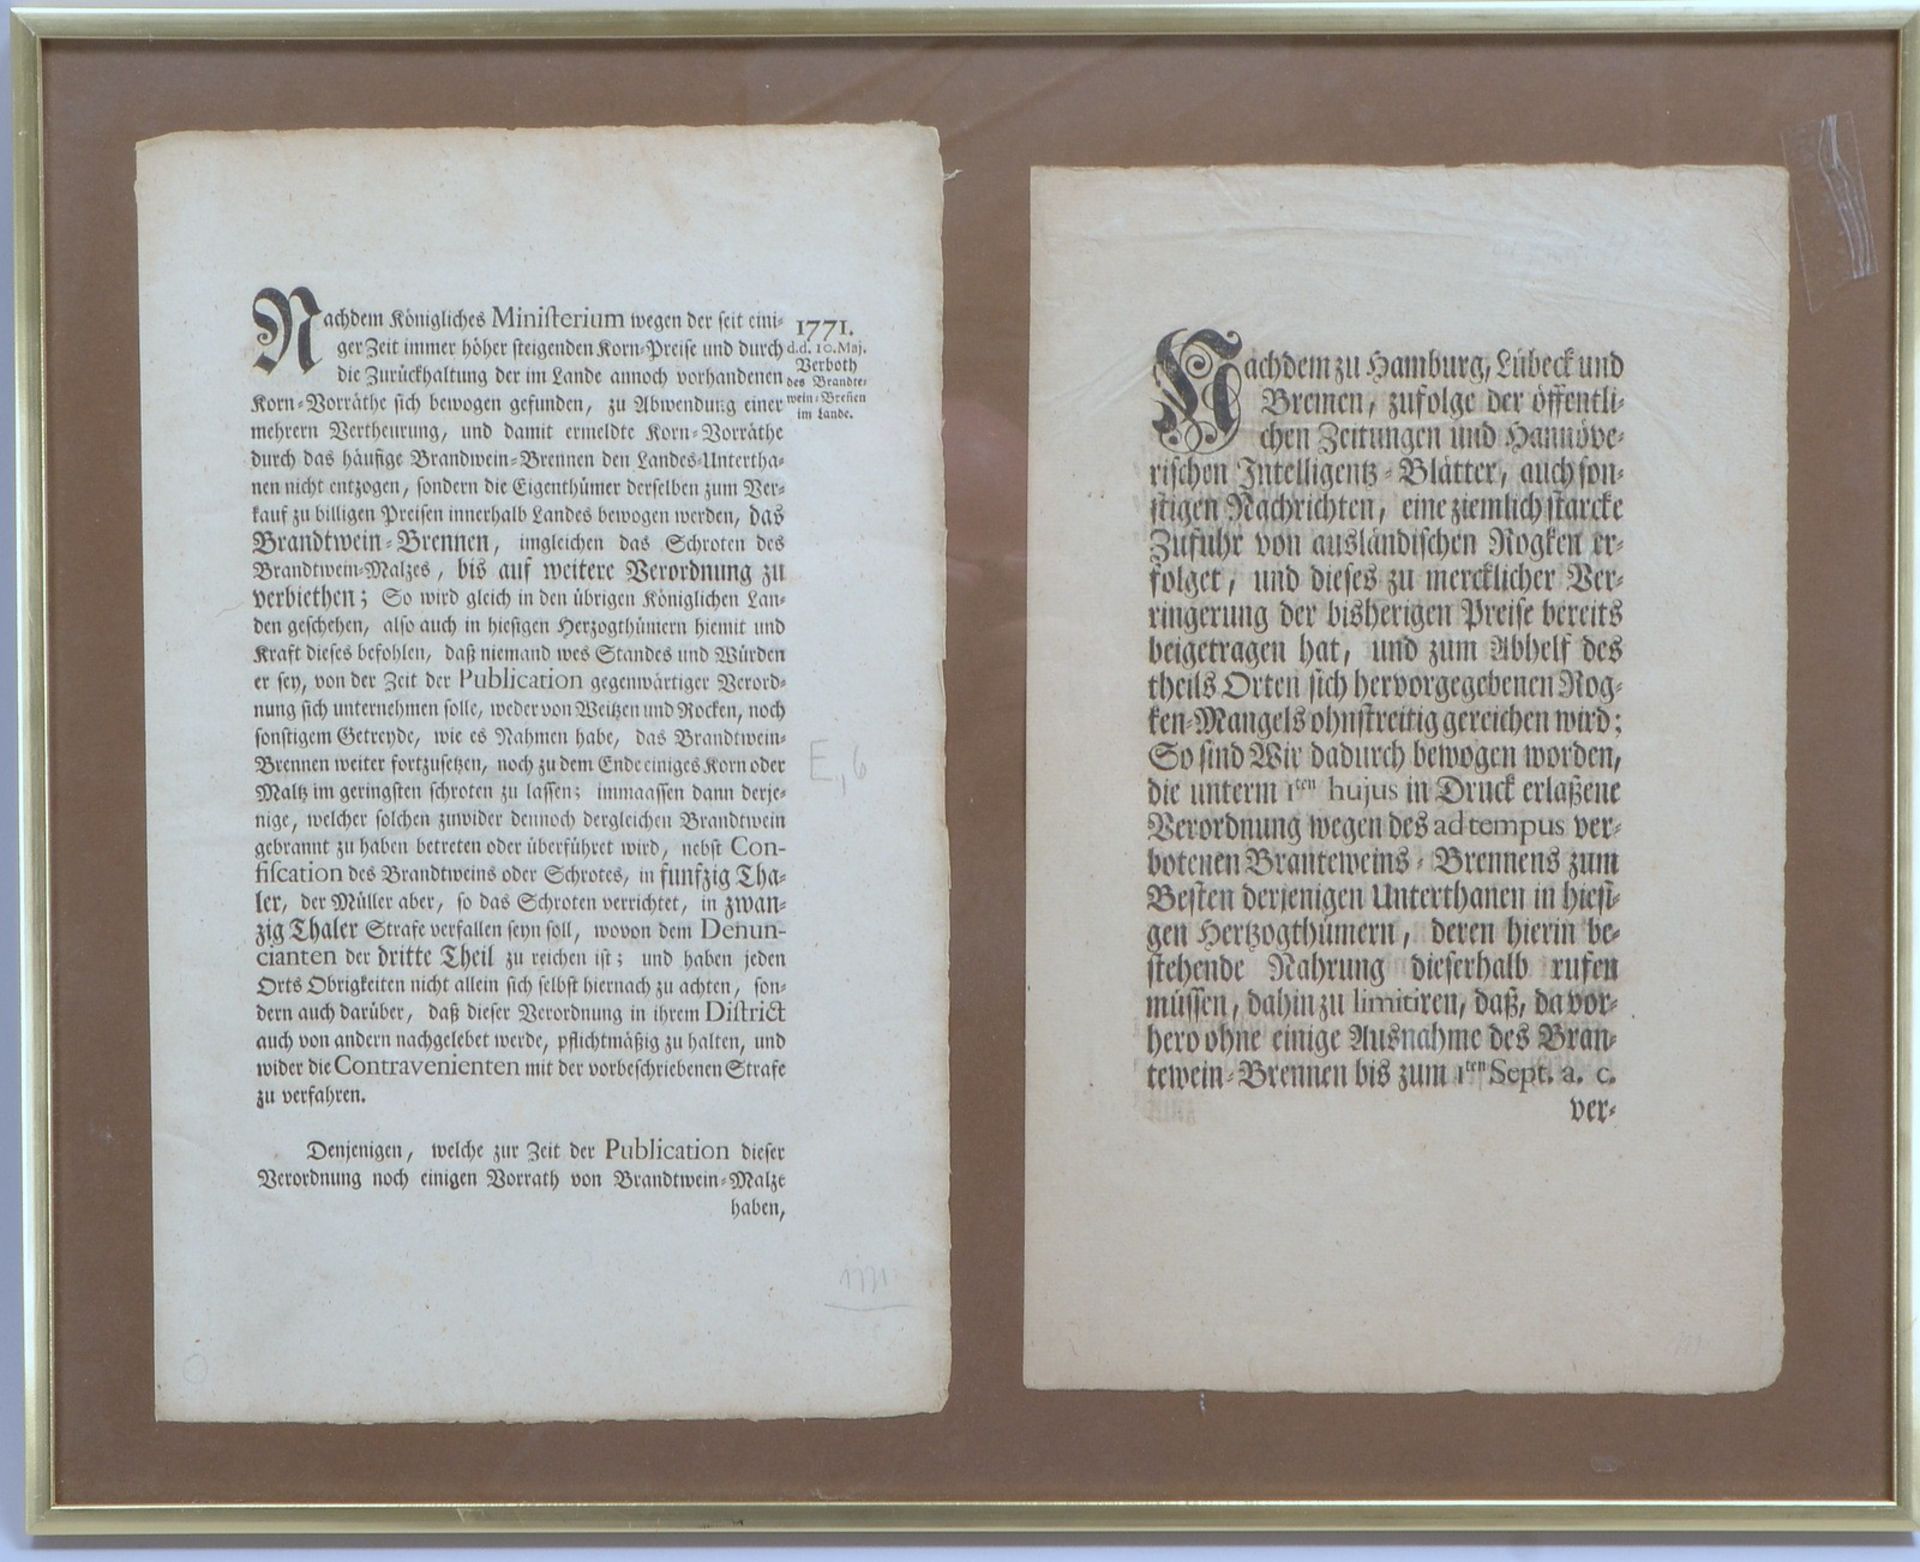 2 antike Sammler-Urkunden (1771), 'Verbot der Branntweinbrennerei', hinter Glas